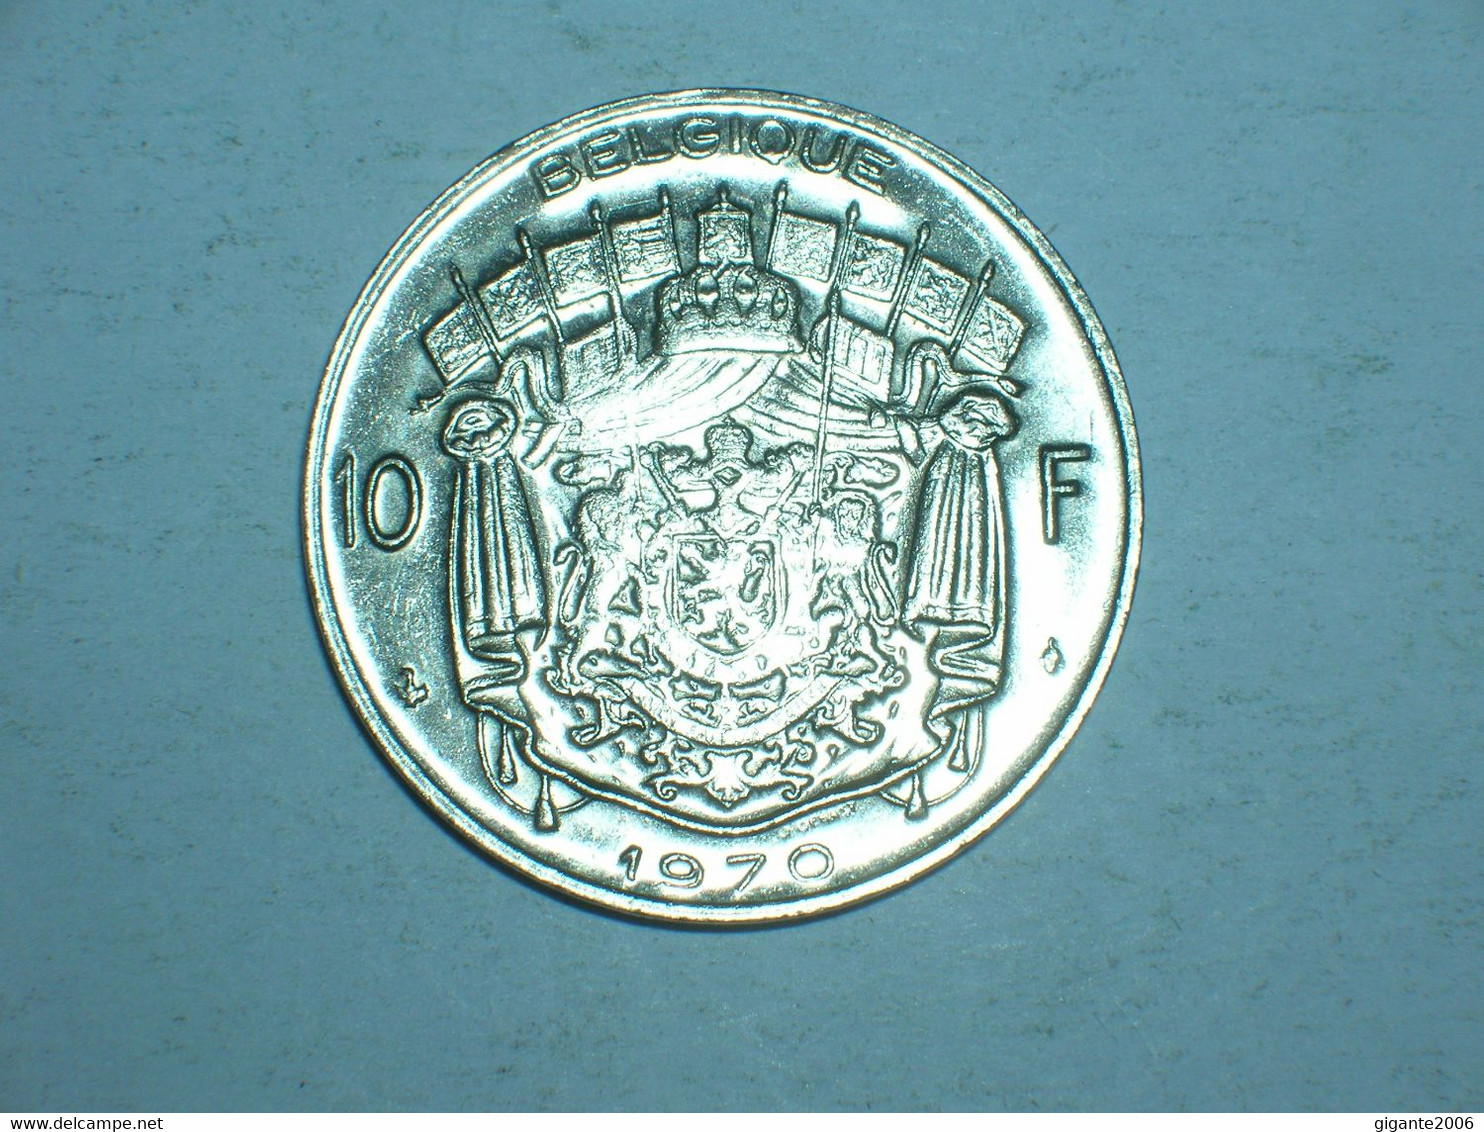 BELGICA 10 FRANCOS 1970 FR  (9256) - 10 Francs